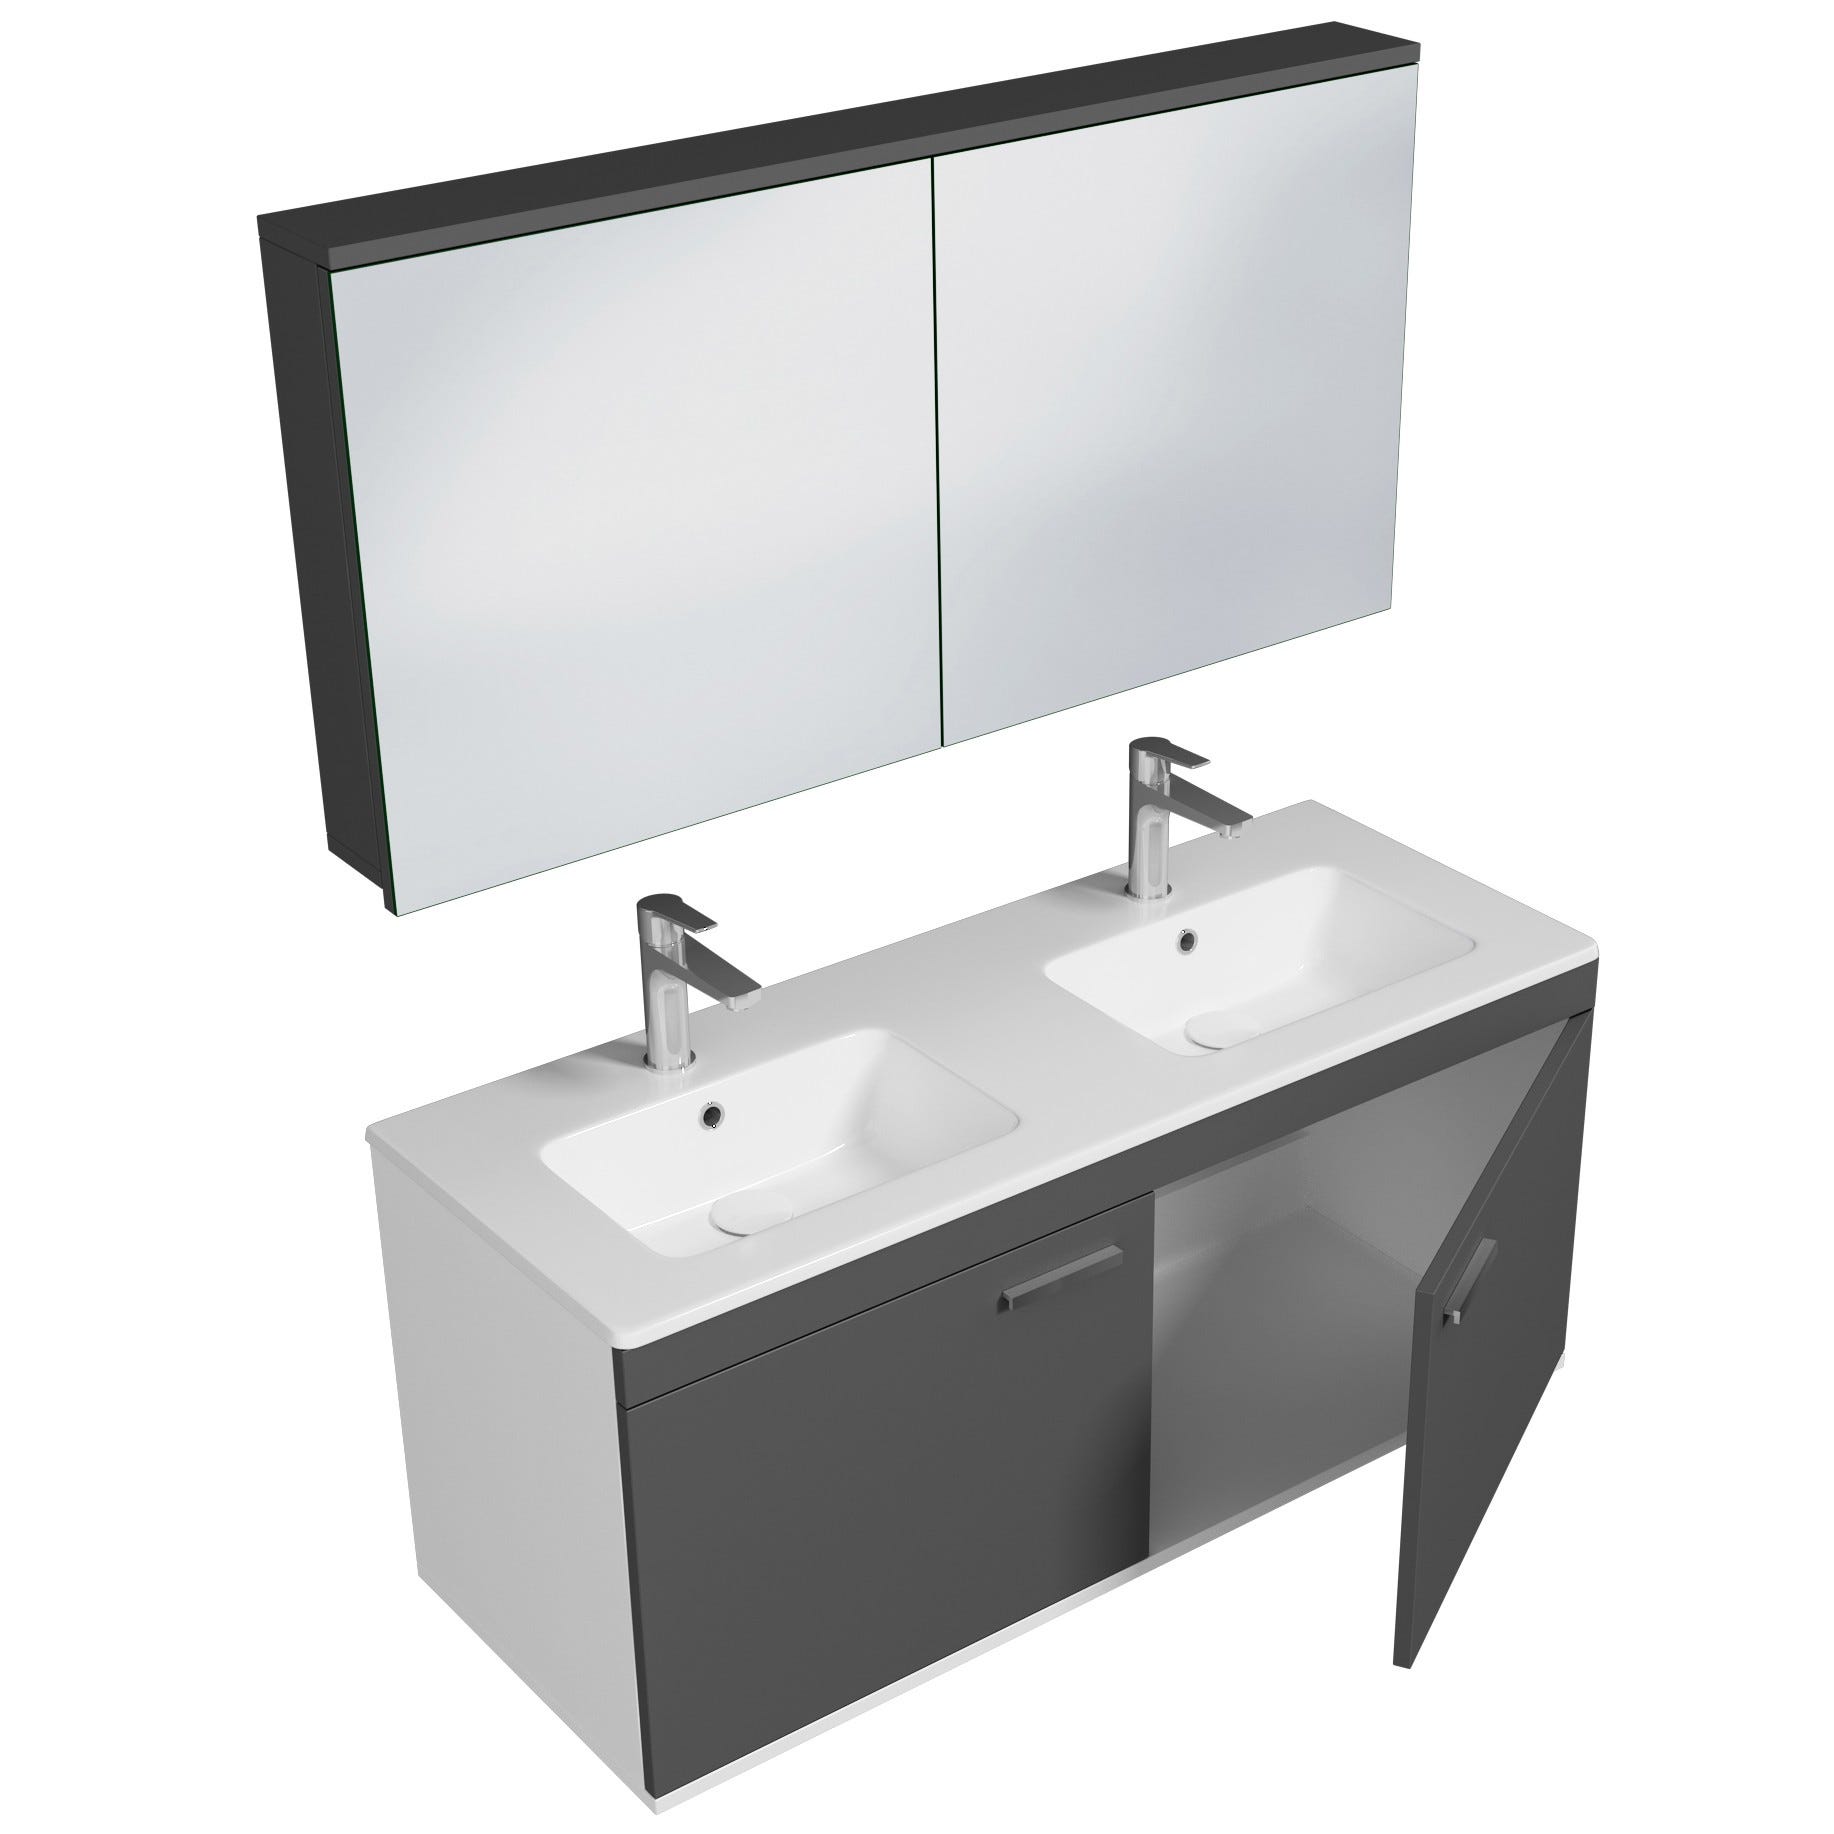 RUBITE Meuble salle de bain double vasque 2 portes gris anthracite largeur 120 cm + miroir armoire 1